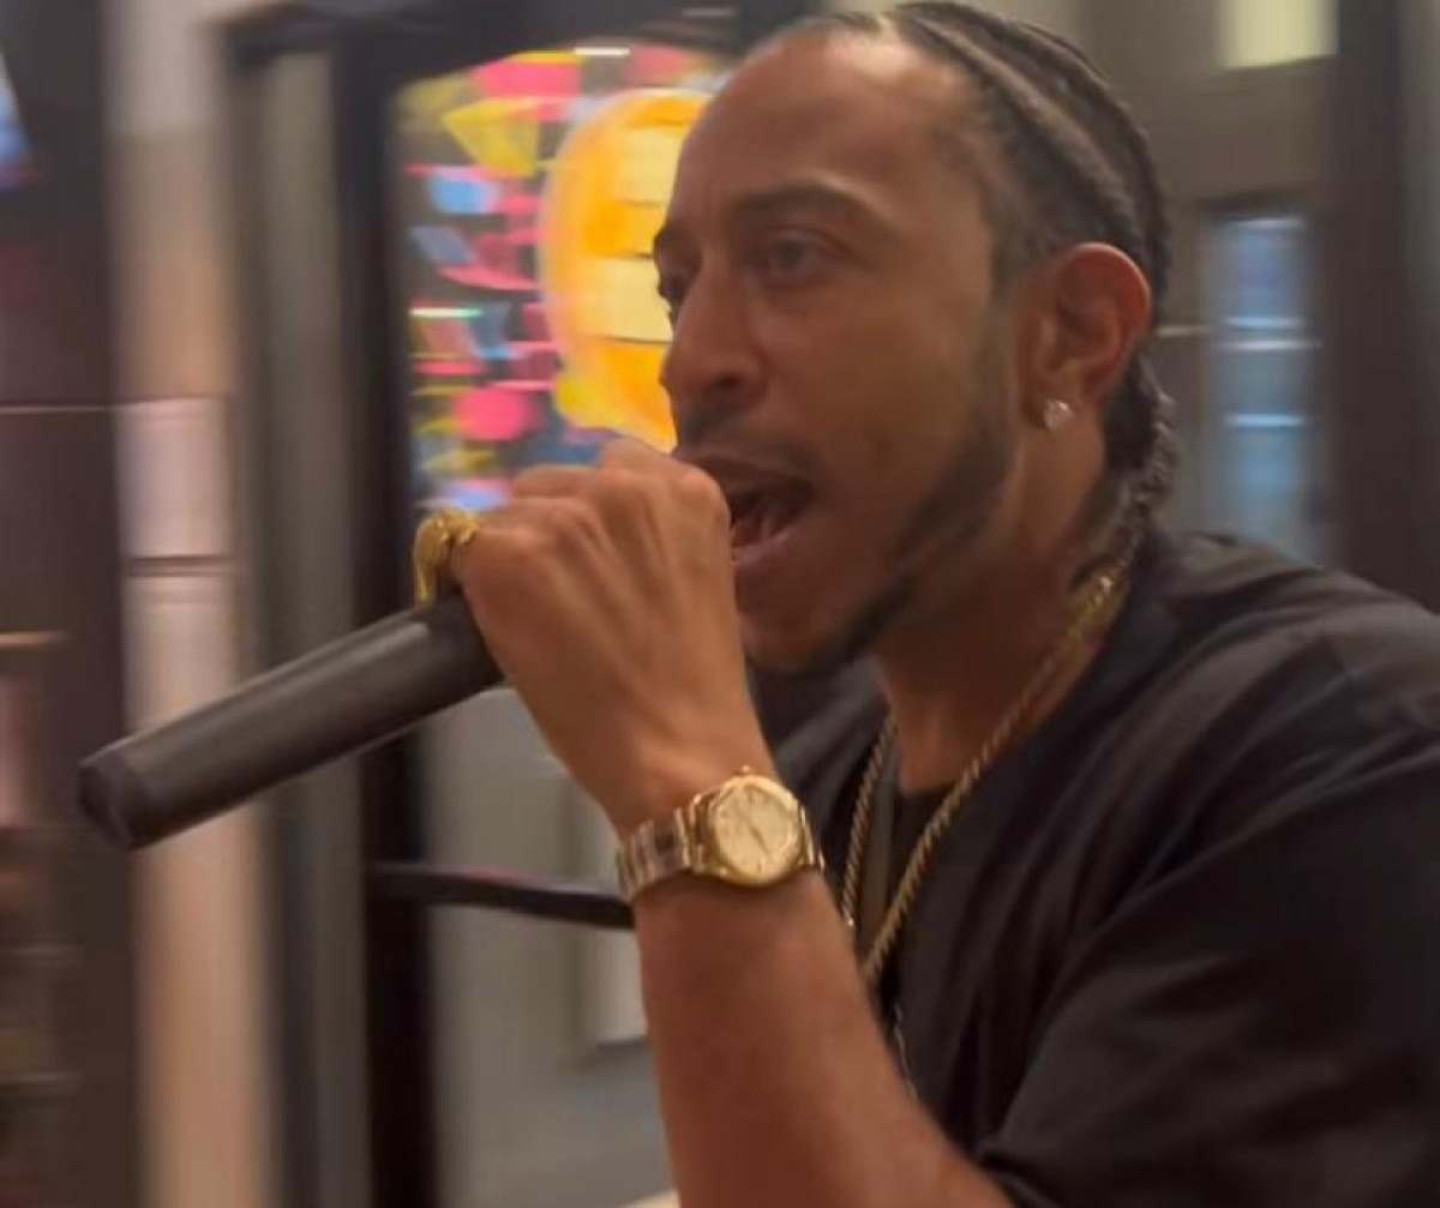 Rapper Ludacris tem show cancelado por mau tempo e se apresenta na rua